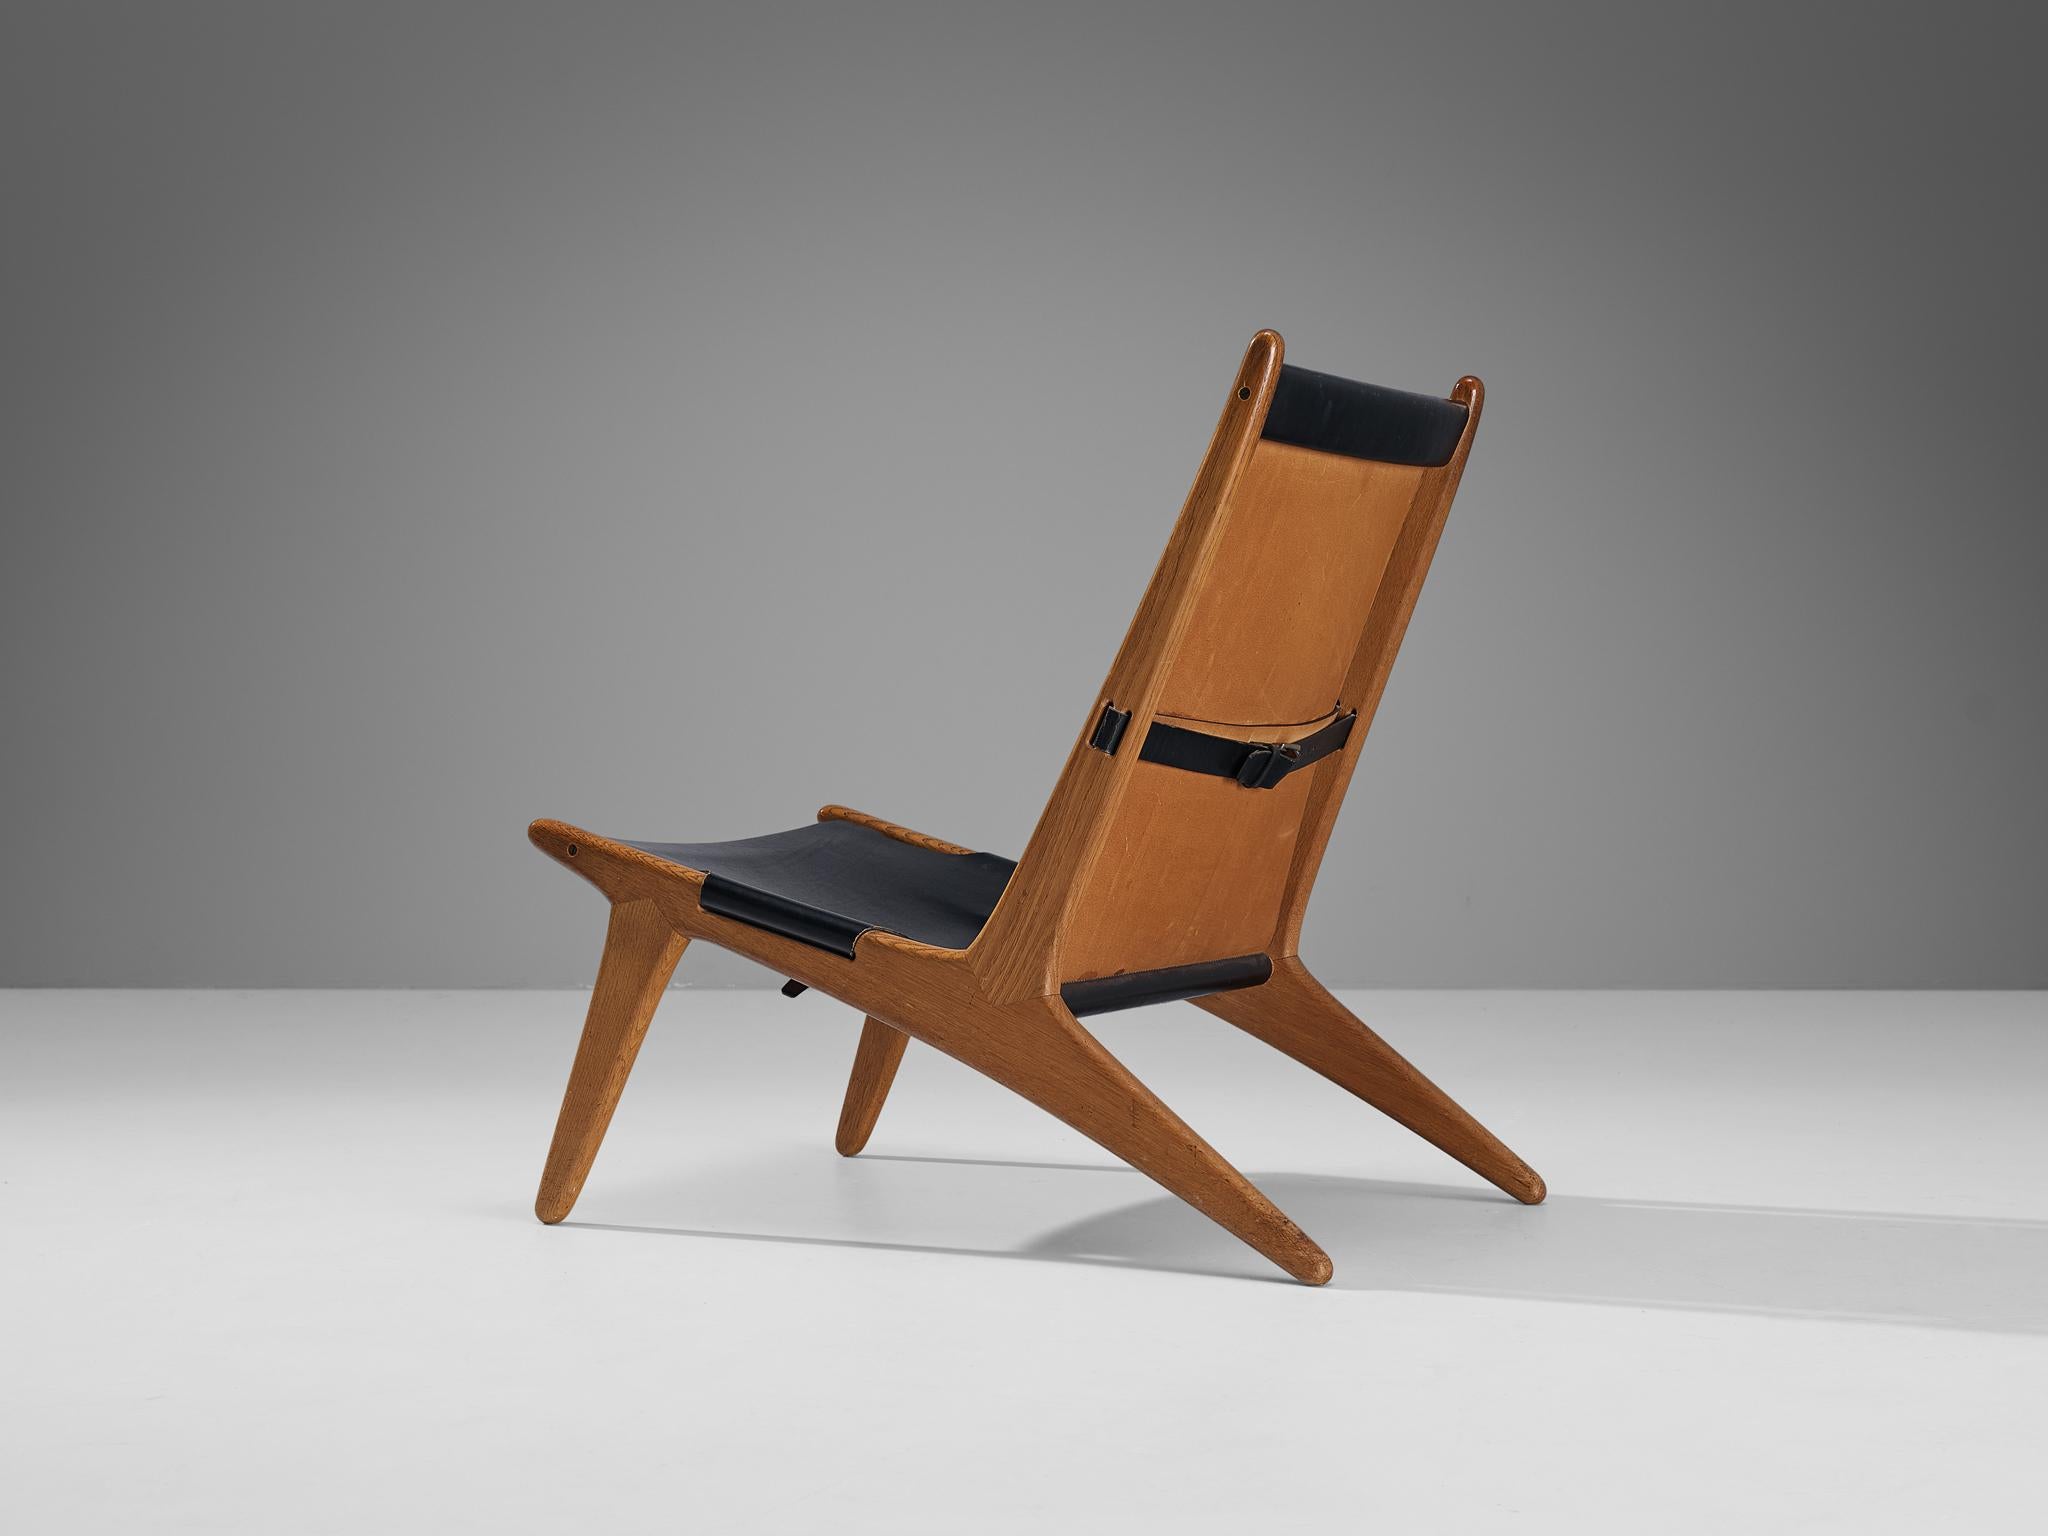 Uno & Östen Kristiansson pour Luxus, chaise de chasse, modèle '204', cuir, chêne, Suède, 1954

Chaise de chasse suédoise conçue par Uno & Östen Kristiansson dans les années cinquante. Ce design unique a une apparence très forte et attire facilement